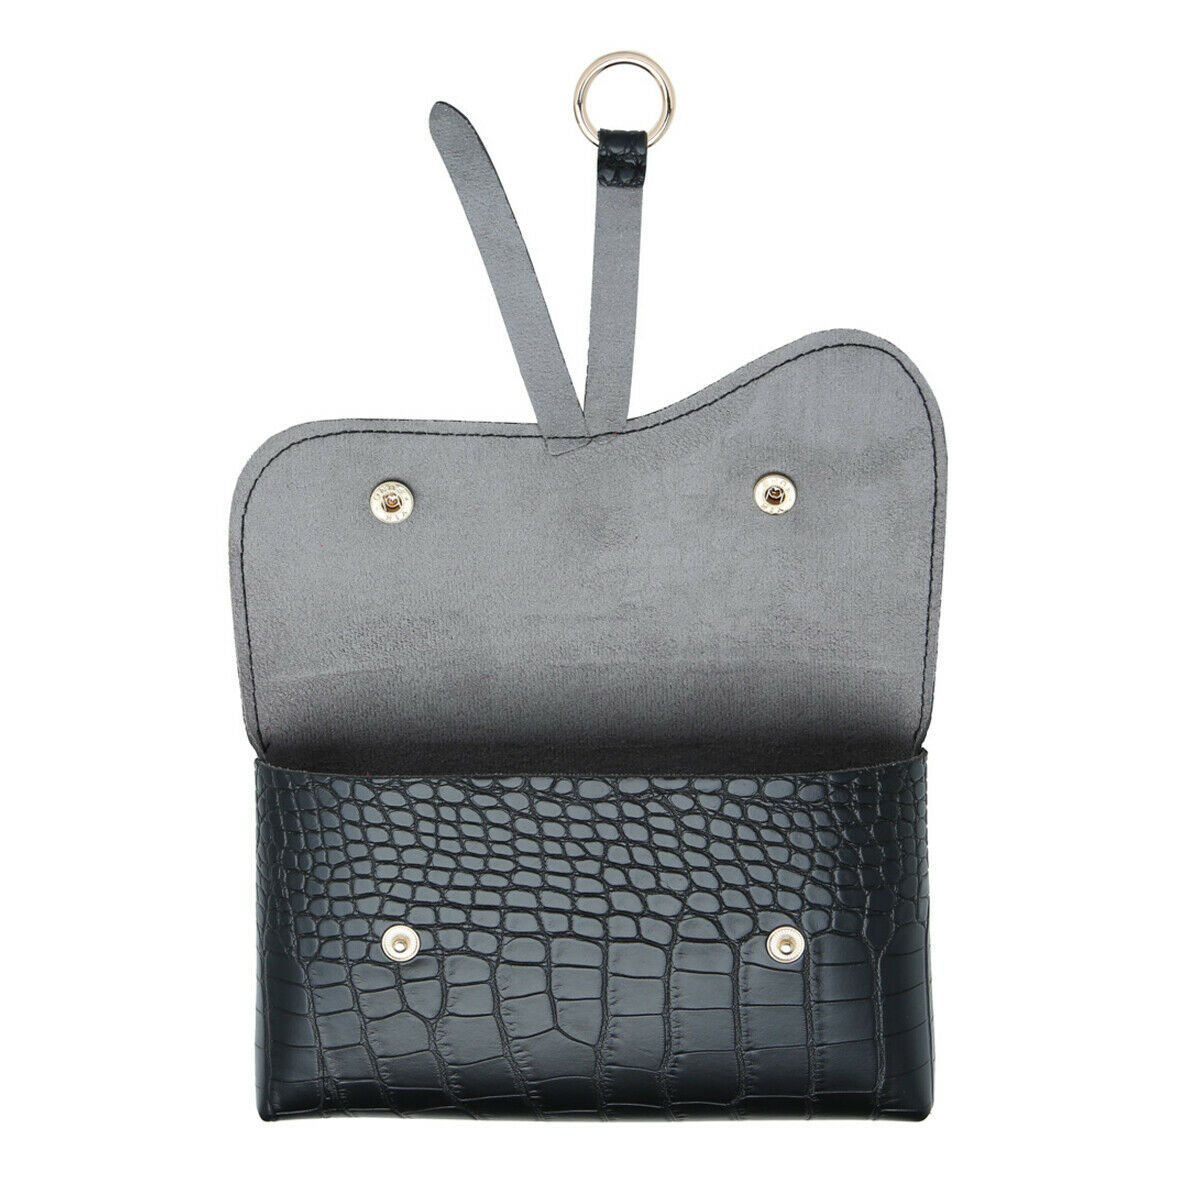 Download On Trend Black Belt Bag Mock Croc Fashion Accessory Gift ...